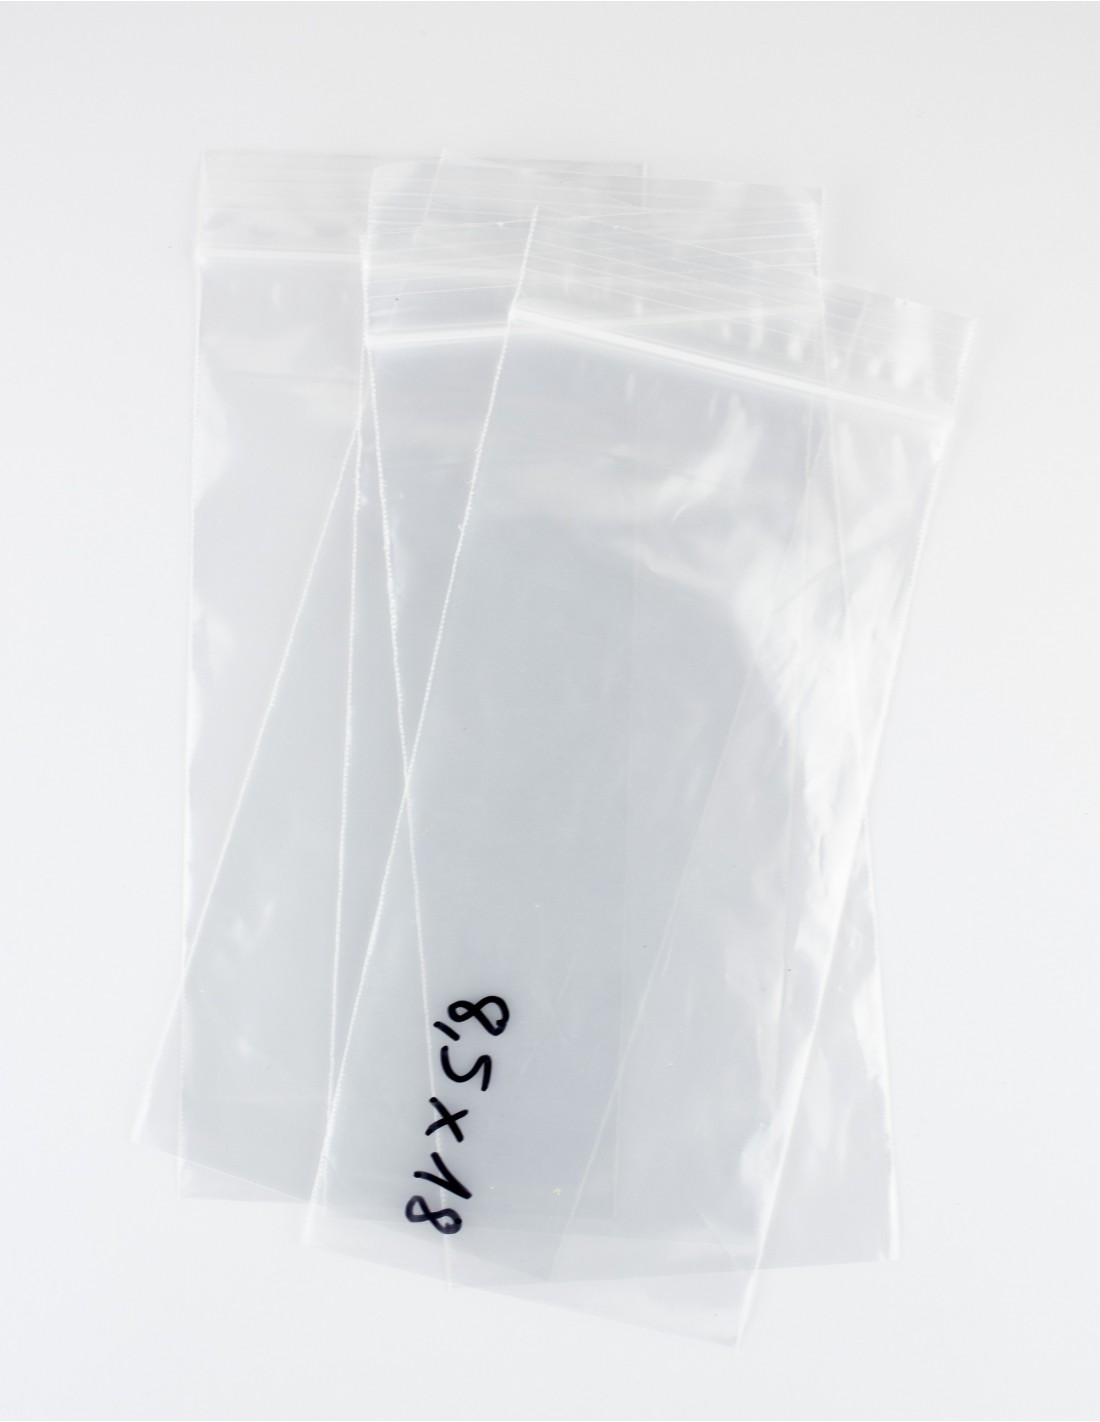 Bolsas 8.5x18 cms de polietileno transparentes, con cierre zip